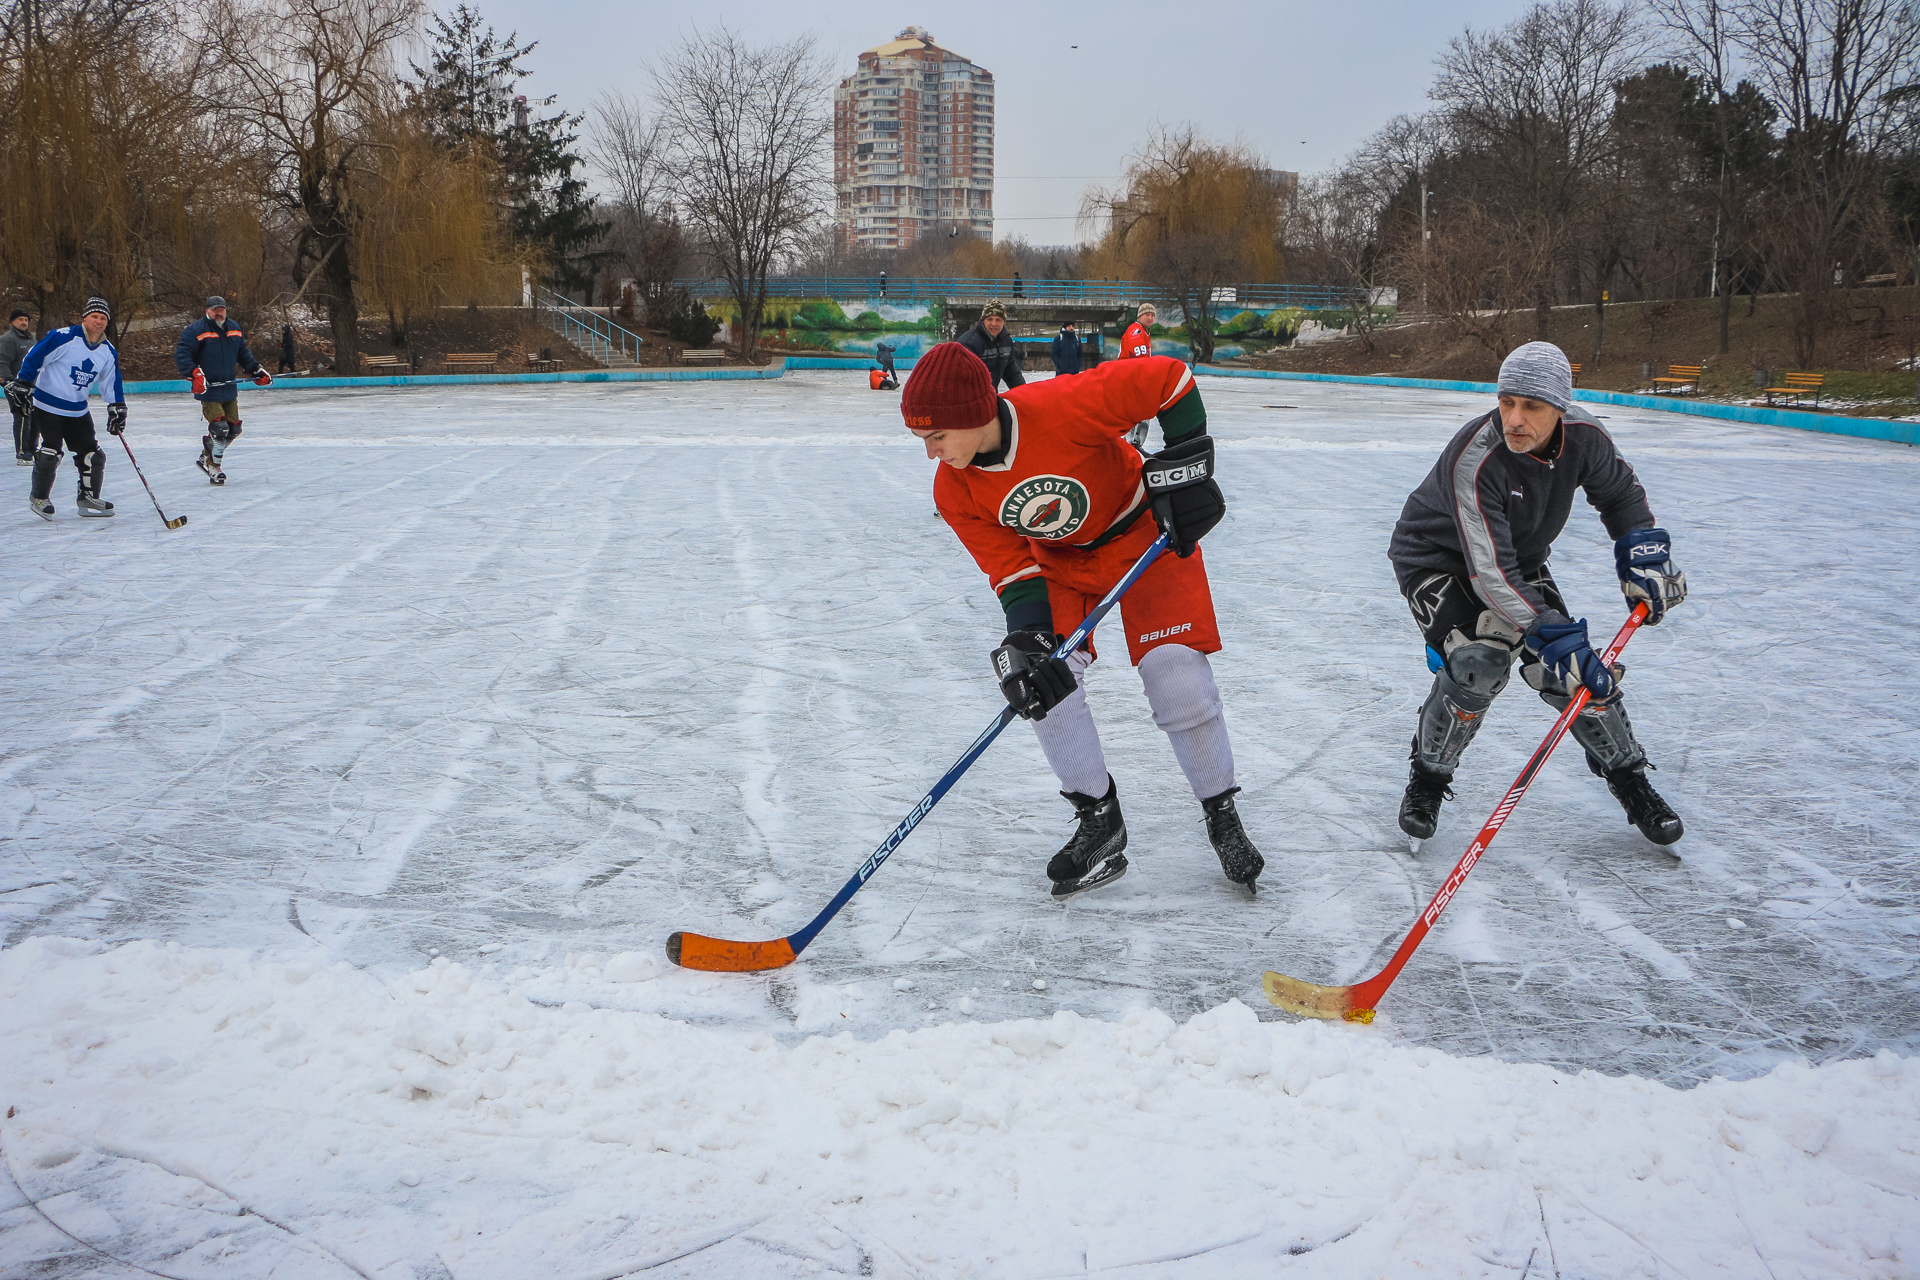 Фигуристы, конькобежцы и даже хоккейная команда: пруд в парке Победы превратился в каток